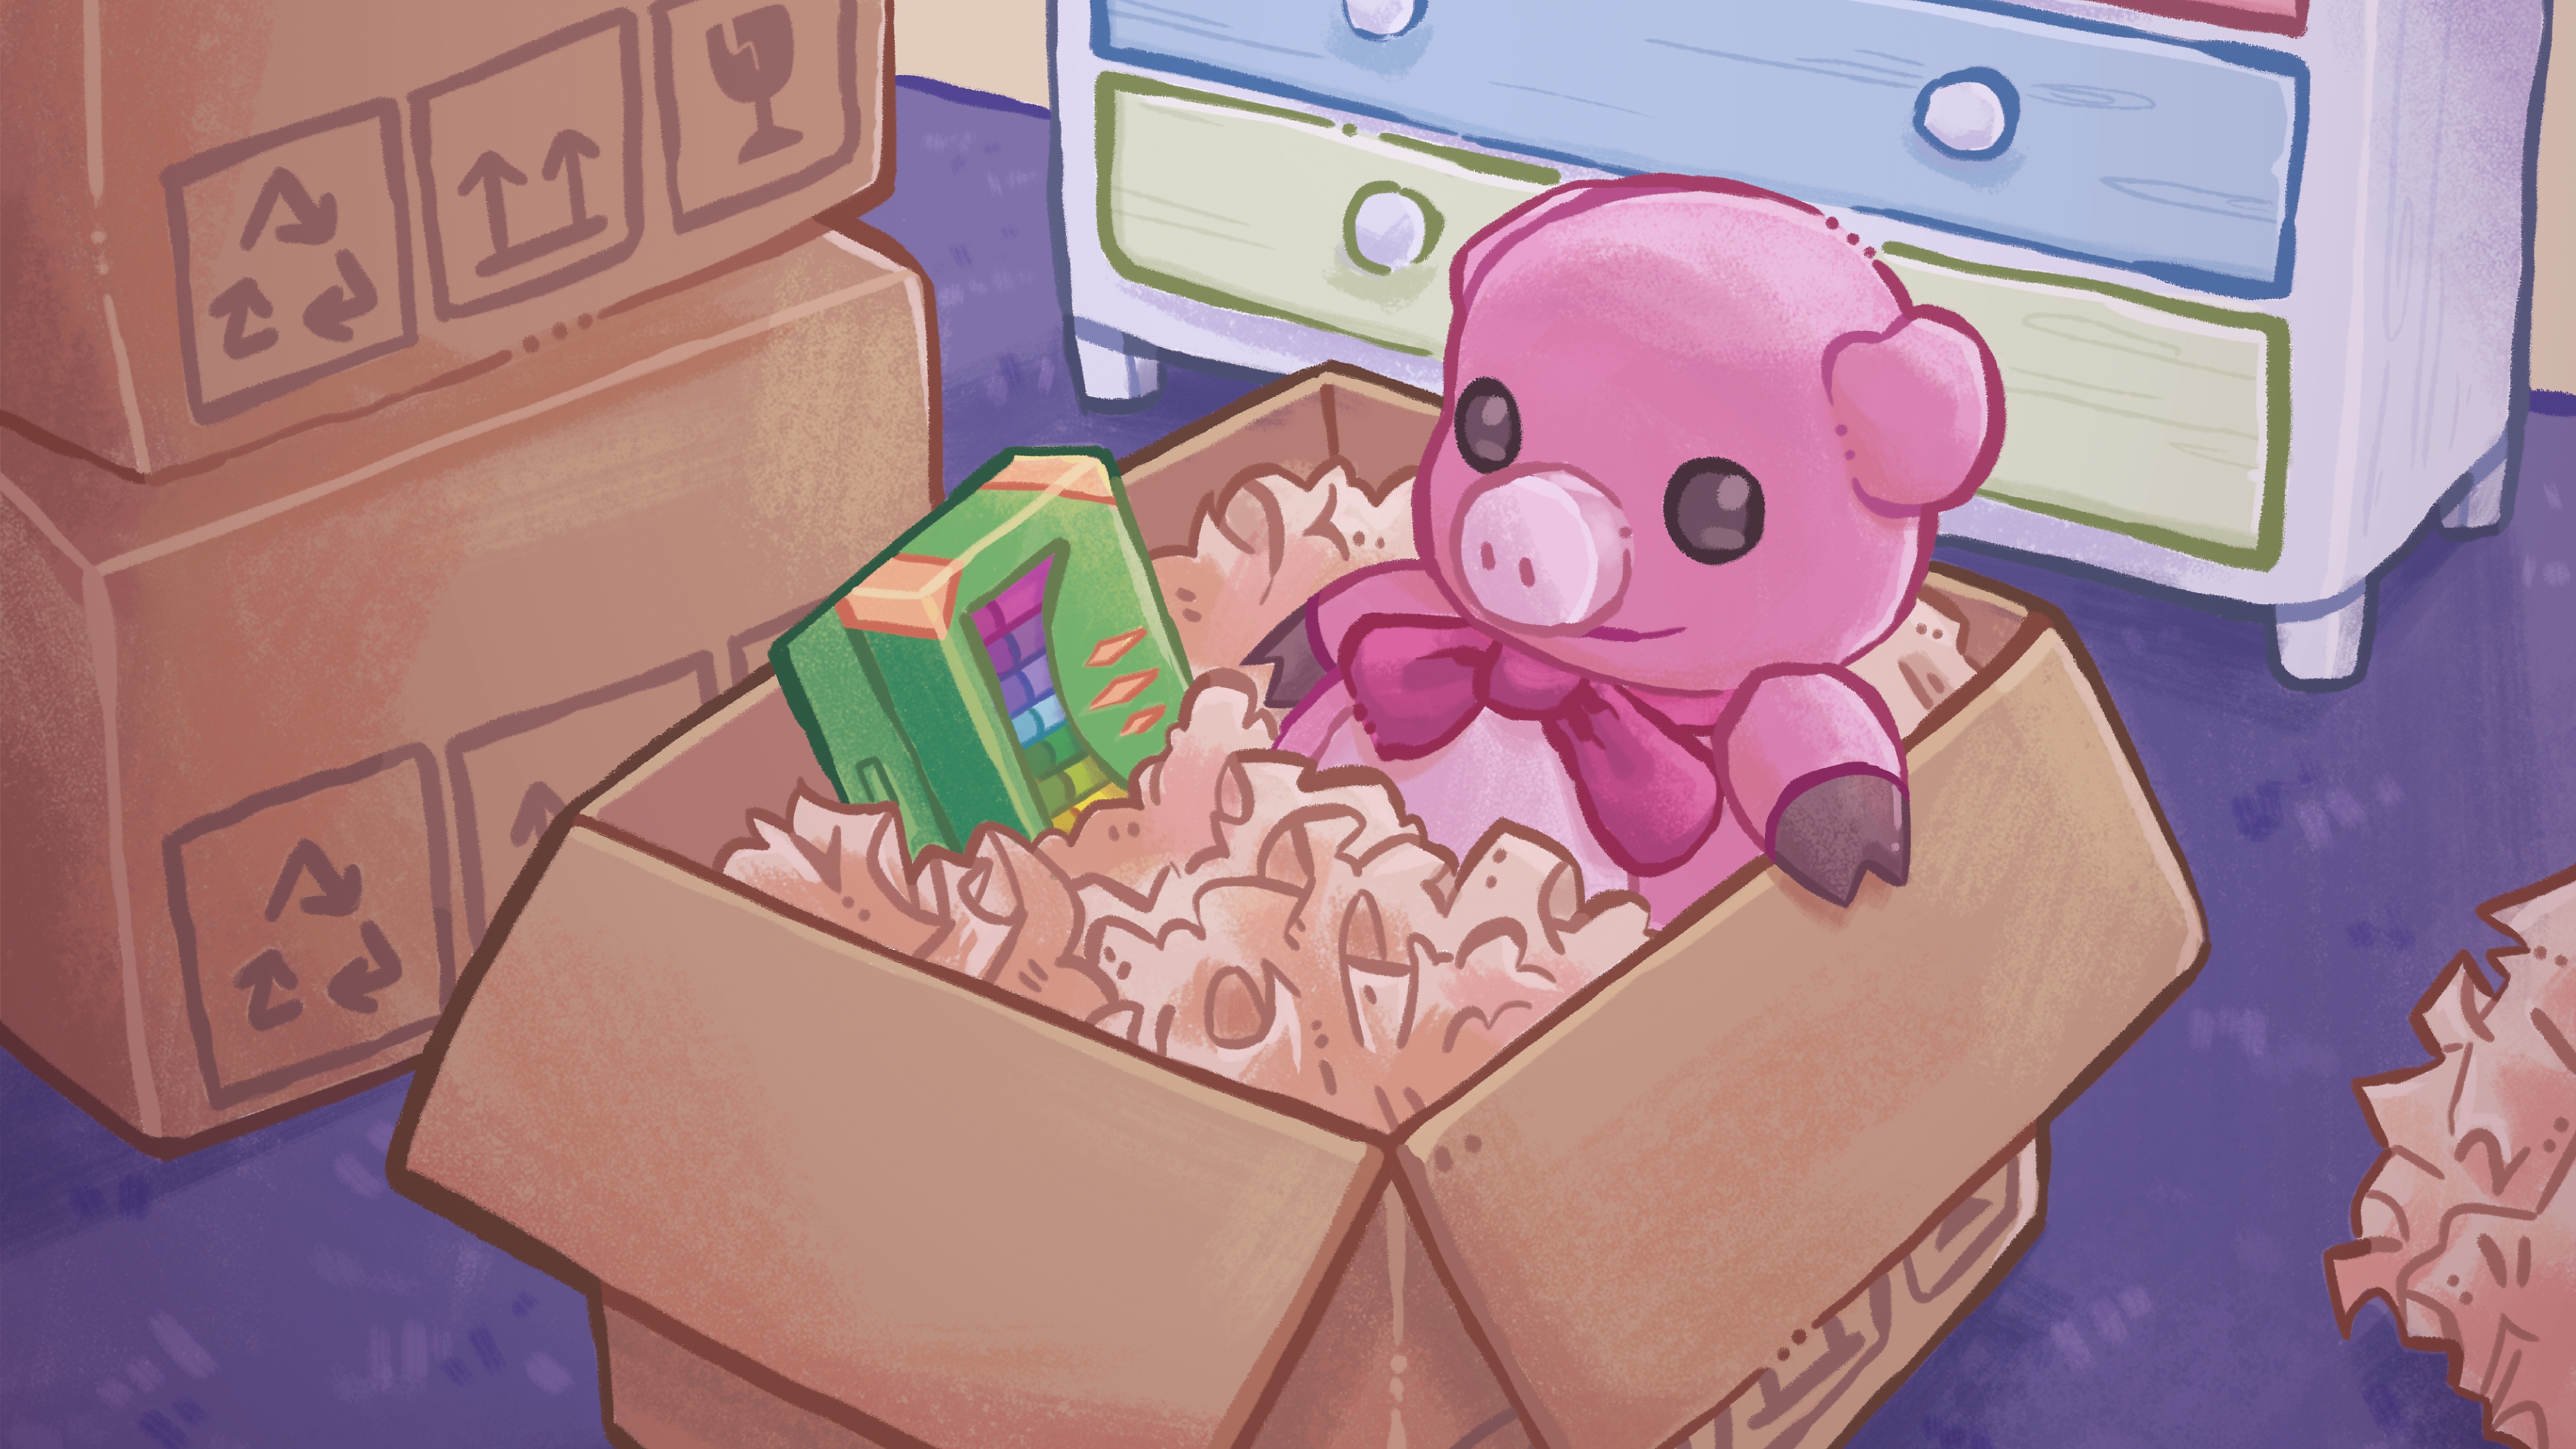 開箱主要美術設計，以彩色手繪插圖為特色，畫的是一隻泰迪熊和裝在瓦楞紙盒裡的一盒蠟筆。